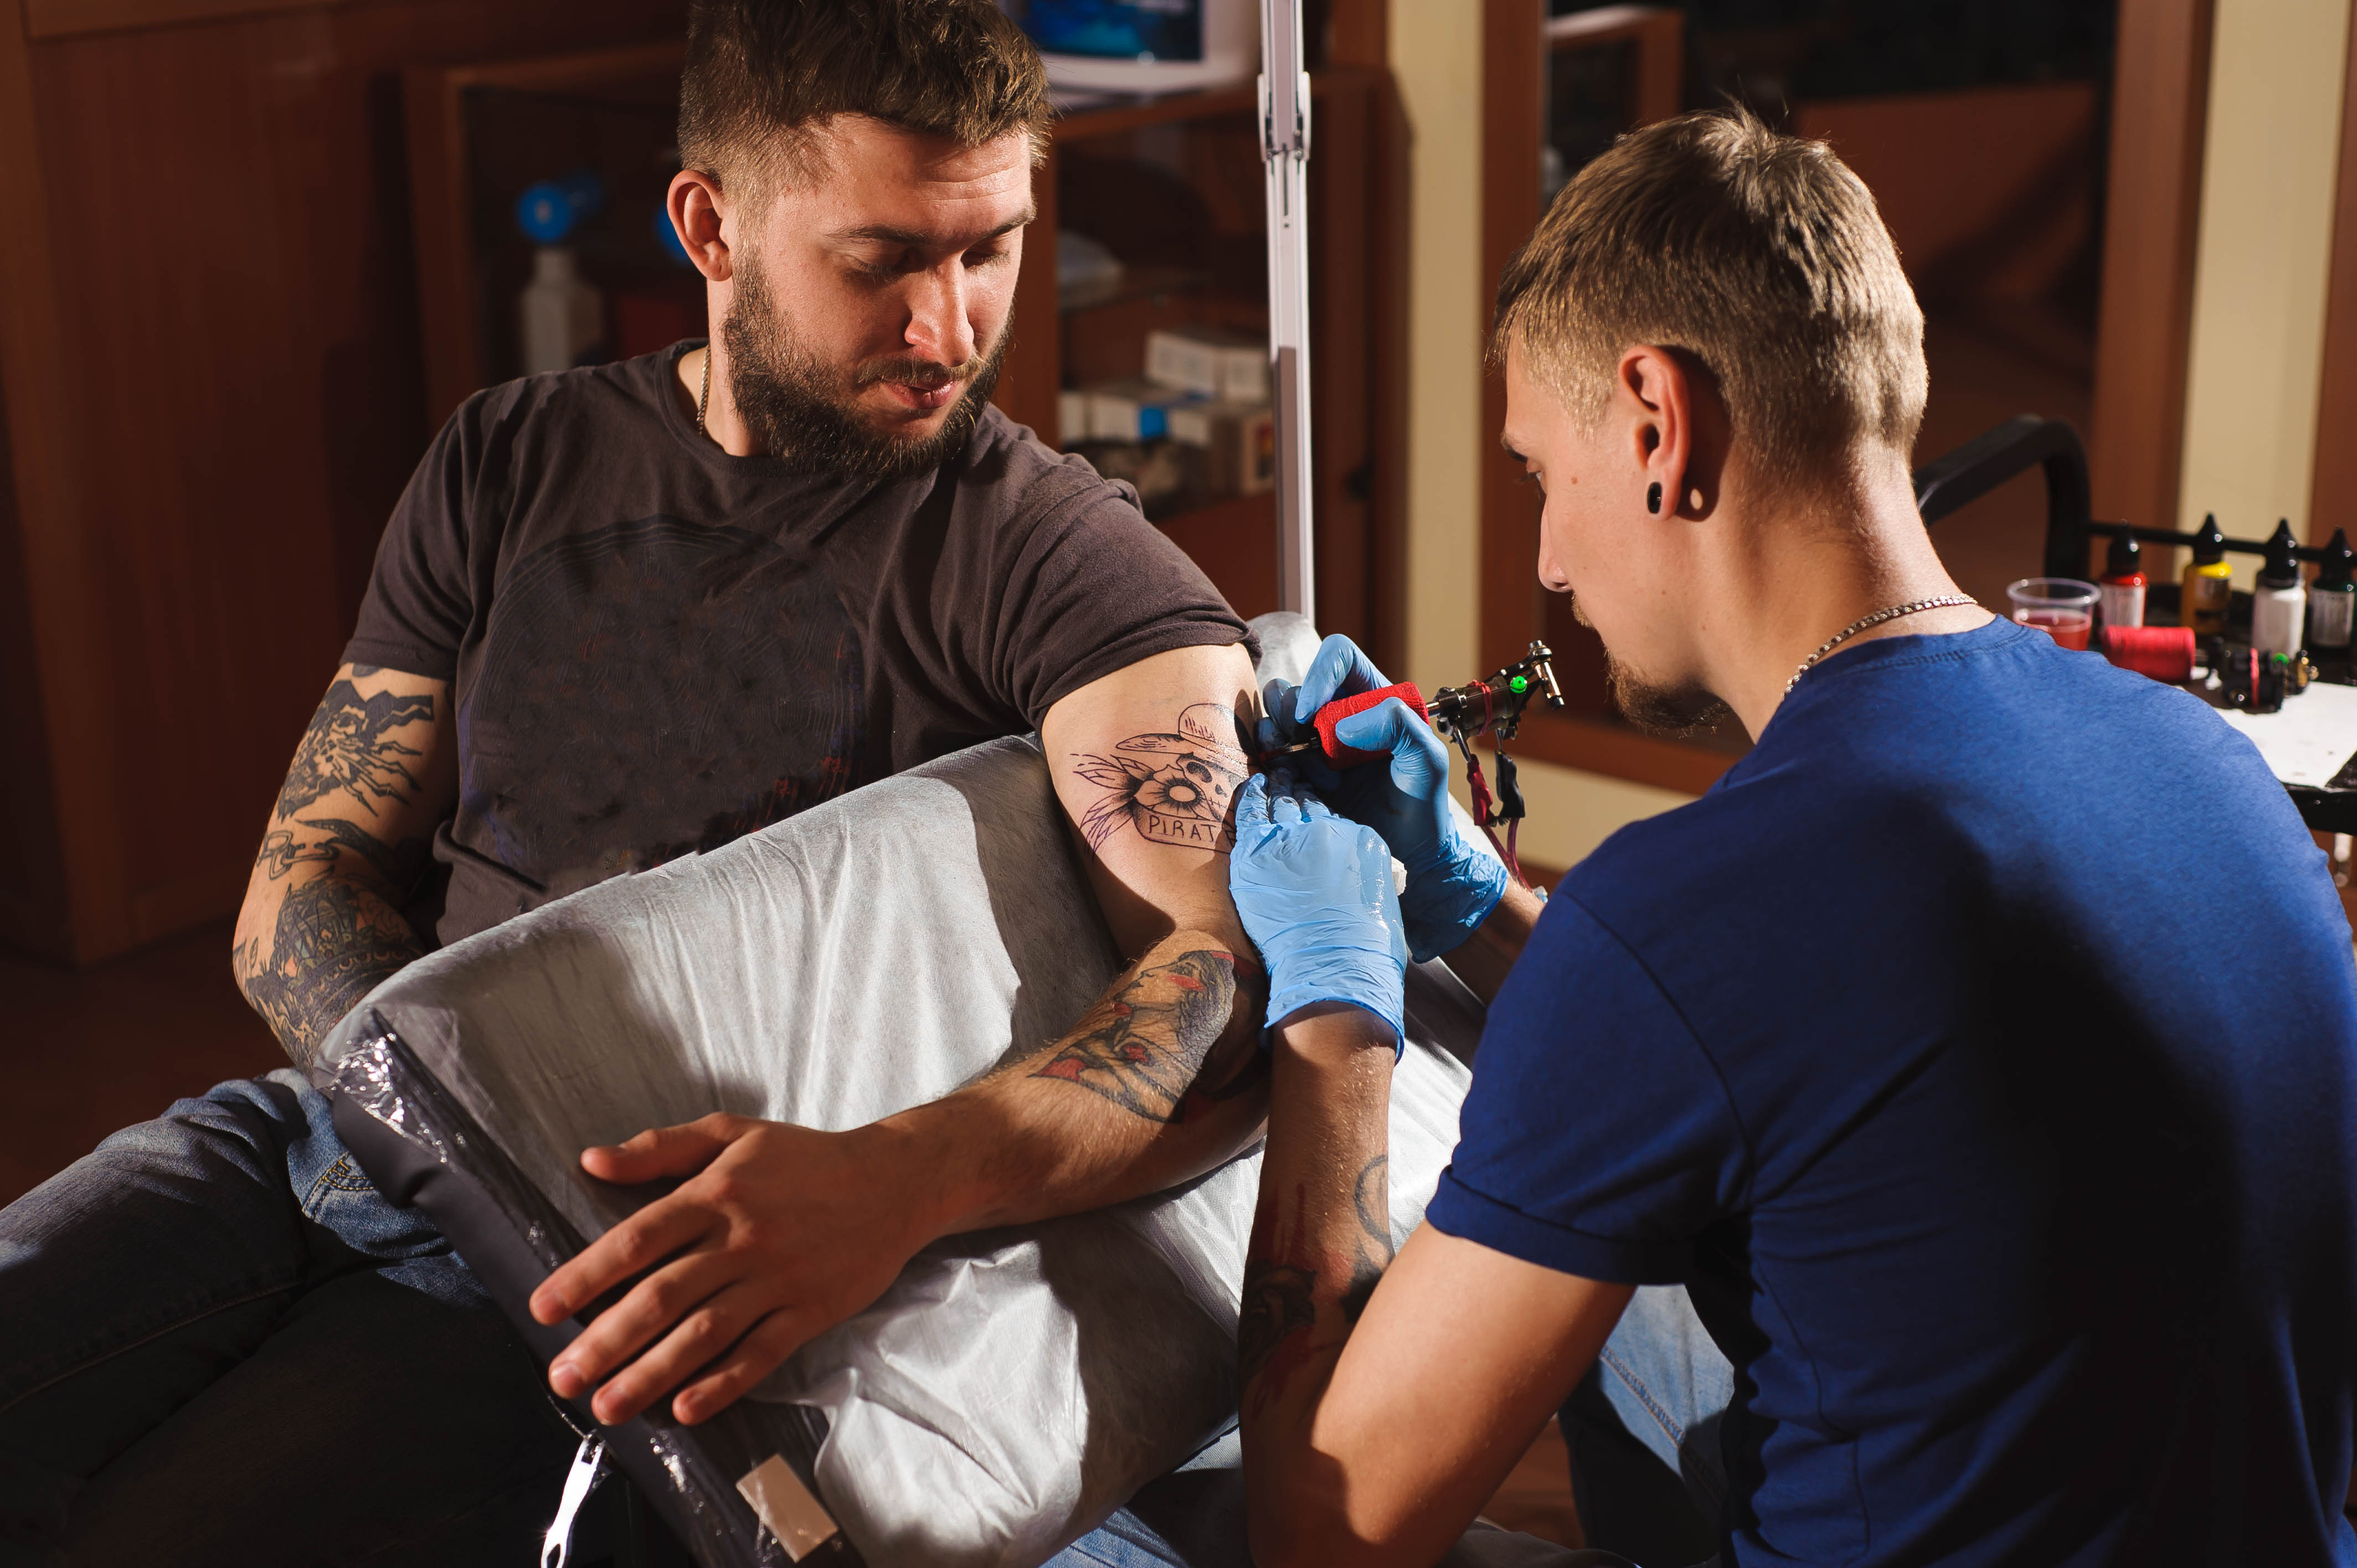 Wykonywanie tatuaży bez zakładania działalności gospodarczej